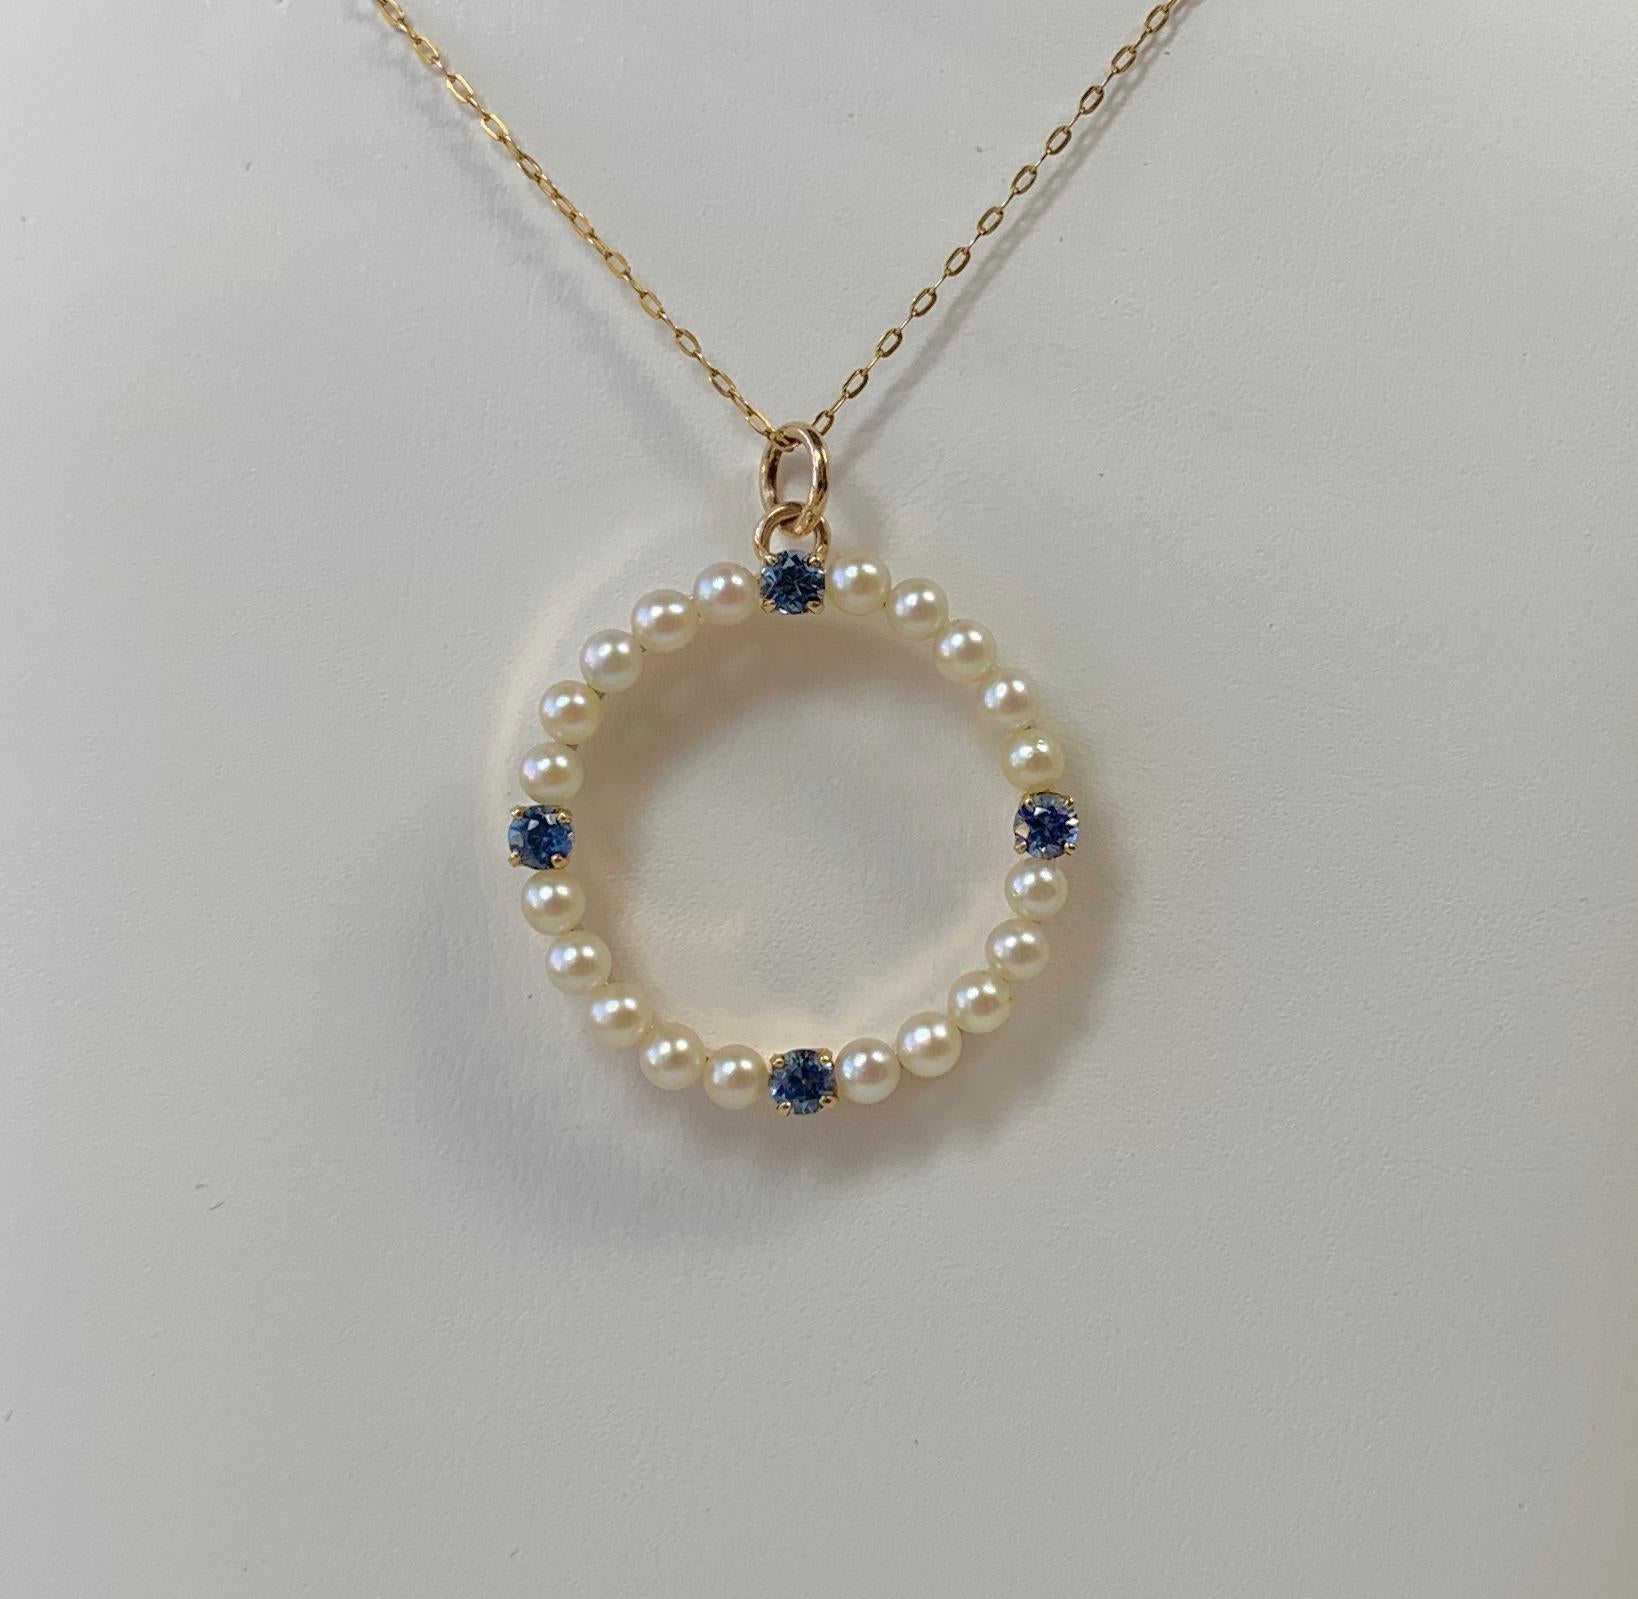 Il s'agit d'un beau et très fin pendentif antique en saphir et perle de style Victorien - Art Déco.  Le pendentif est serti de quatre saphirs bleus de très belle qualité.  Ces saphirs d'extraction naturelle sont de qualité gemme.  Ils ont une